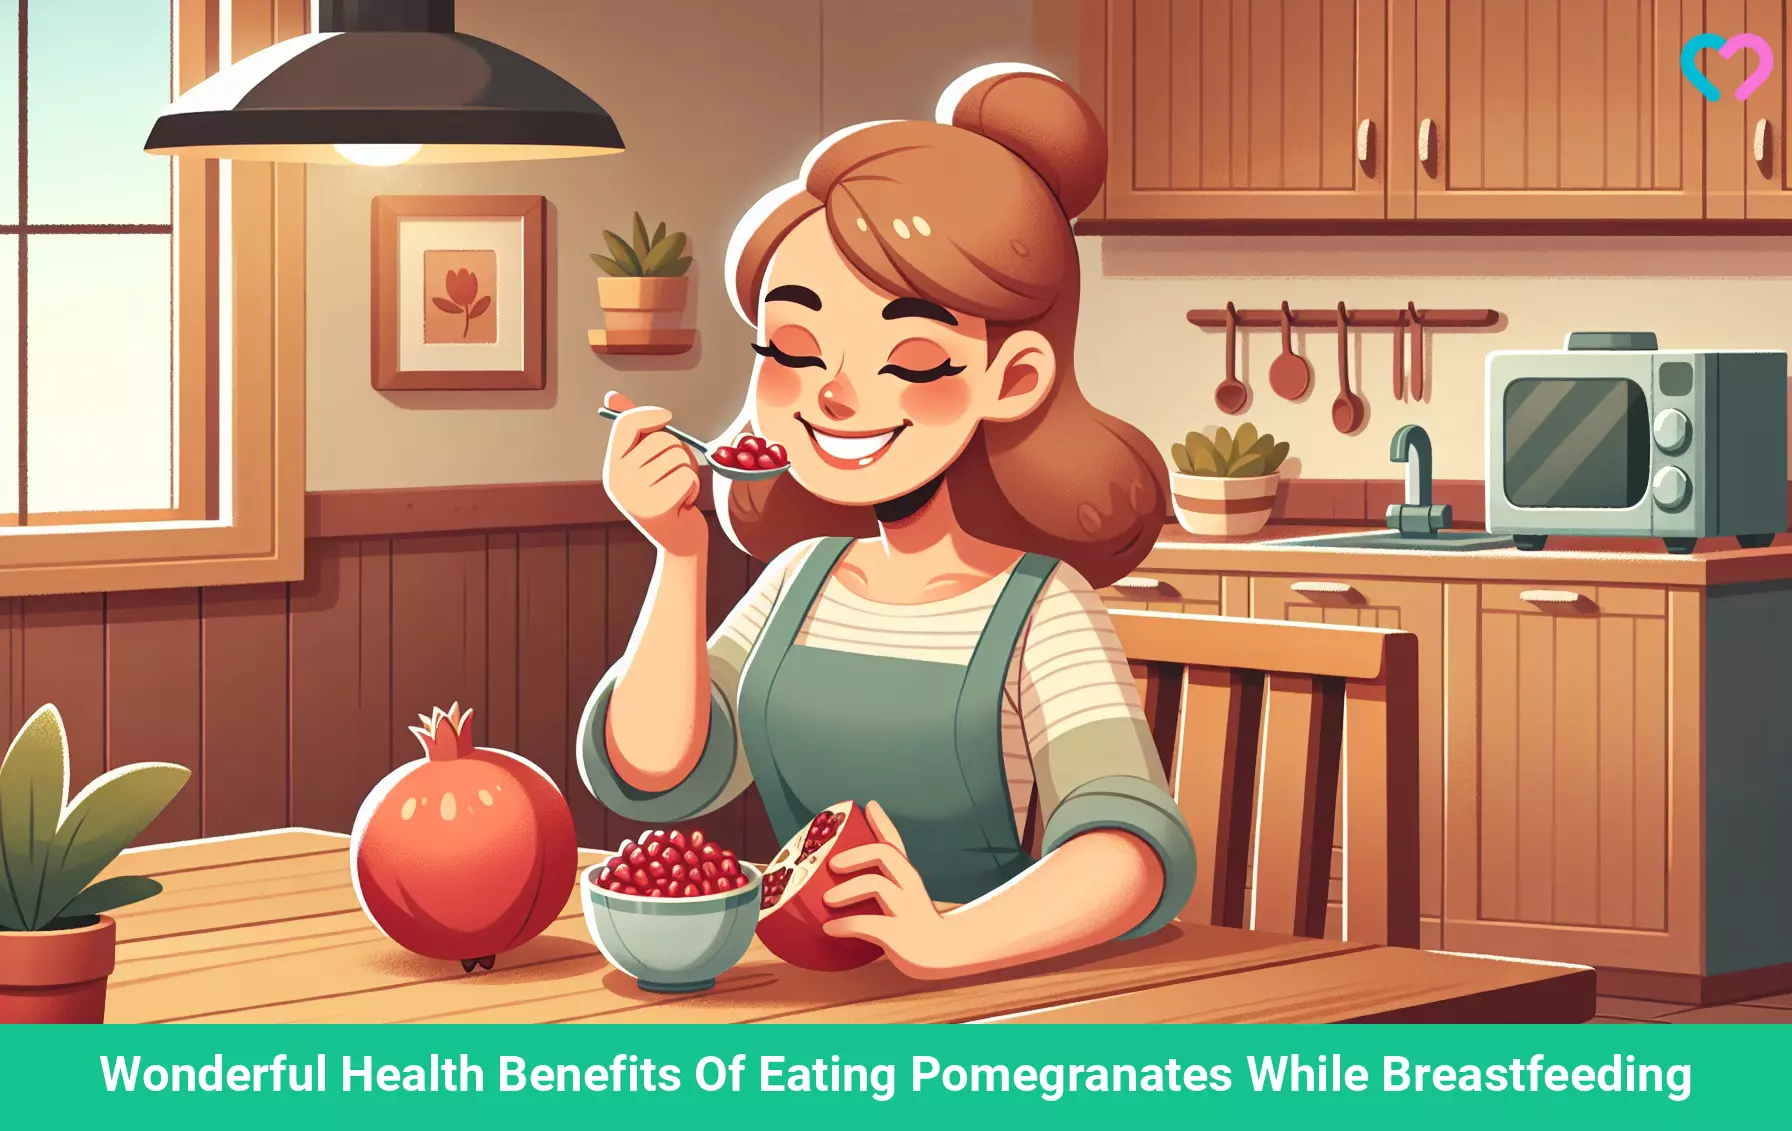 pomegranate while breastfeeding_illustration